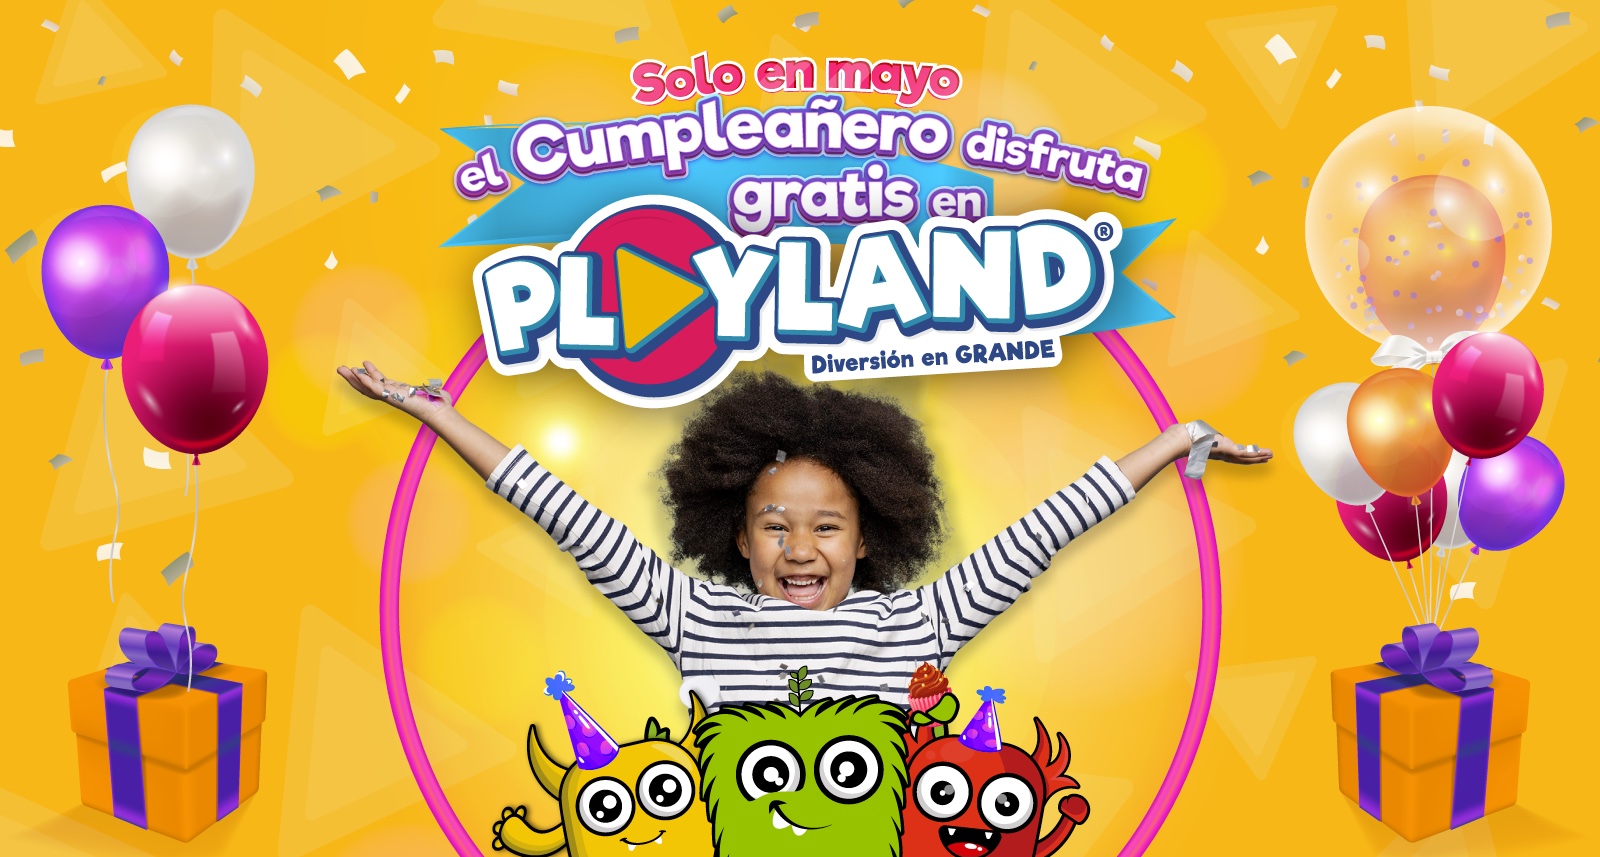 Términos y condiciones:  En mayo el cumpleañero disfruta gratis en Playland